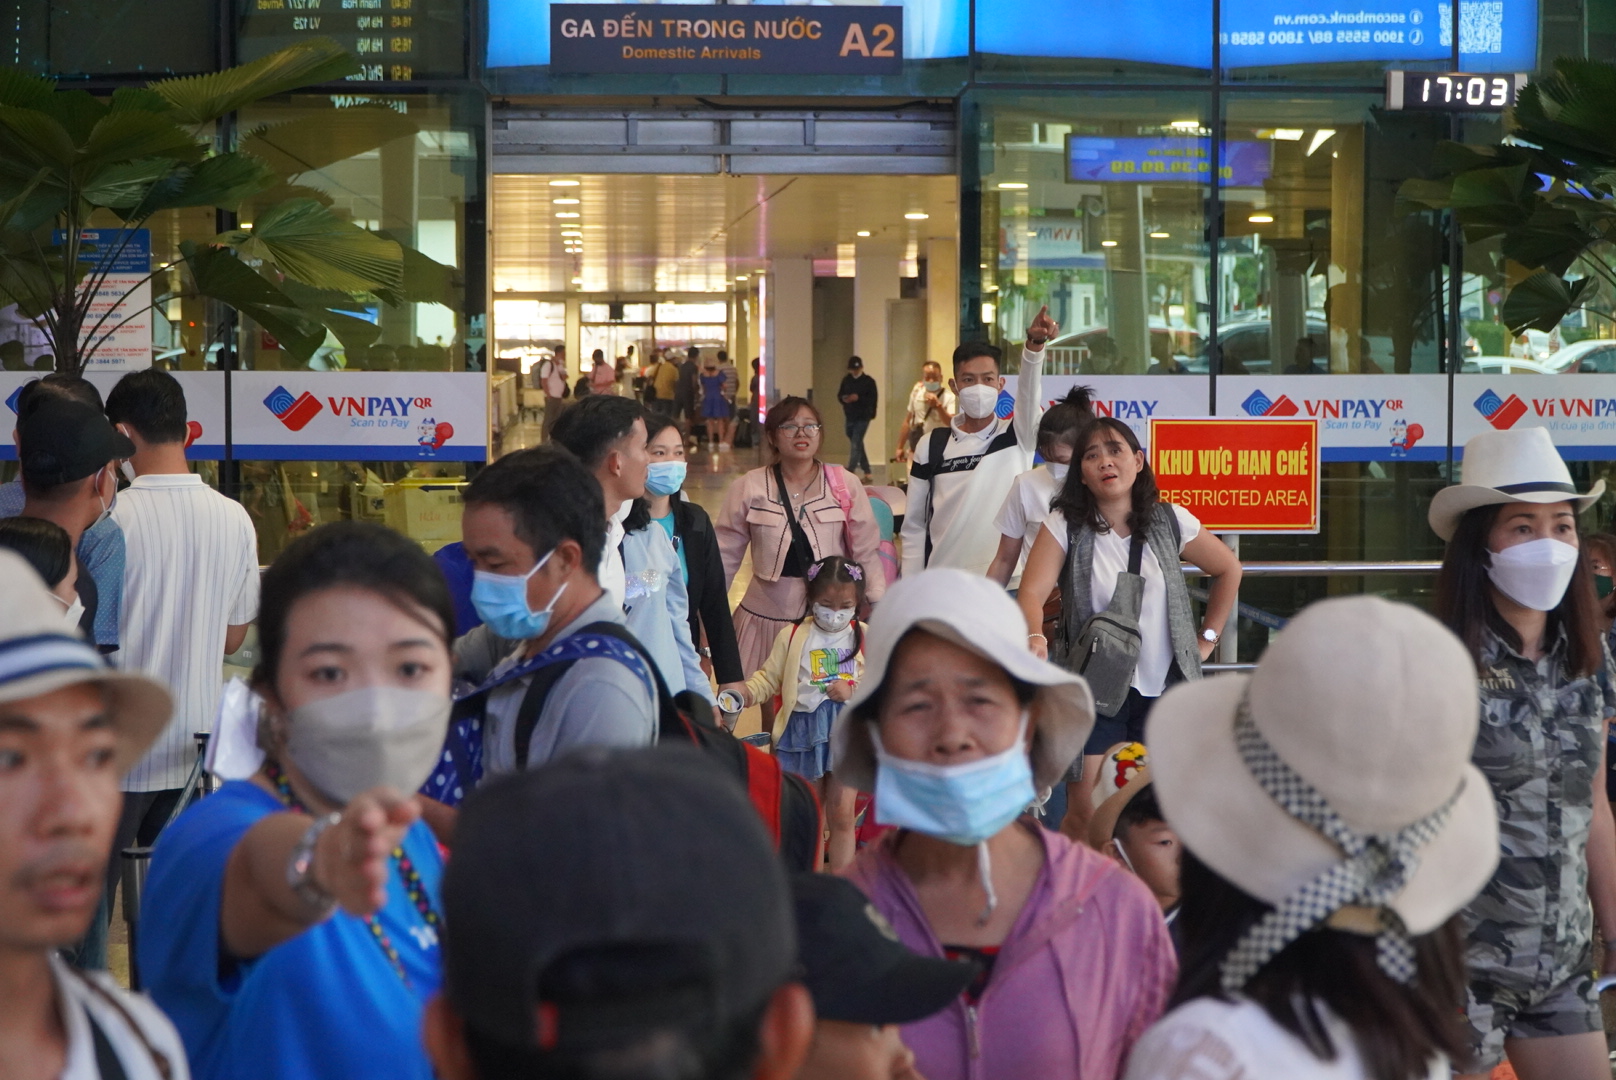 Thu hồi hơn 14,7ha đất quốc phòng để kịp khởi công nhà ga T3 sân bay Tân Sơn Nhất trong tháng 12 - Ảnh 1.